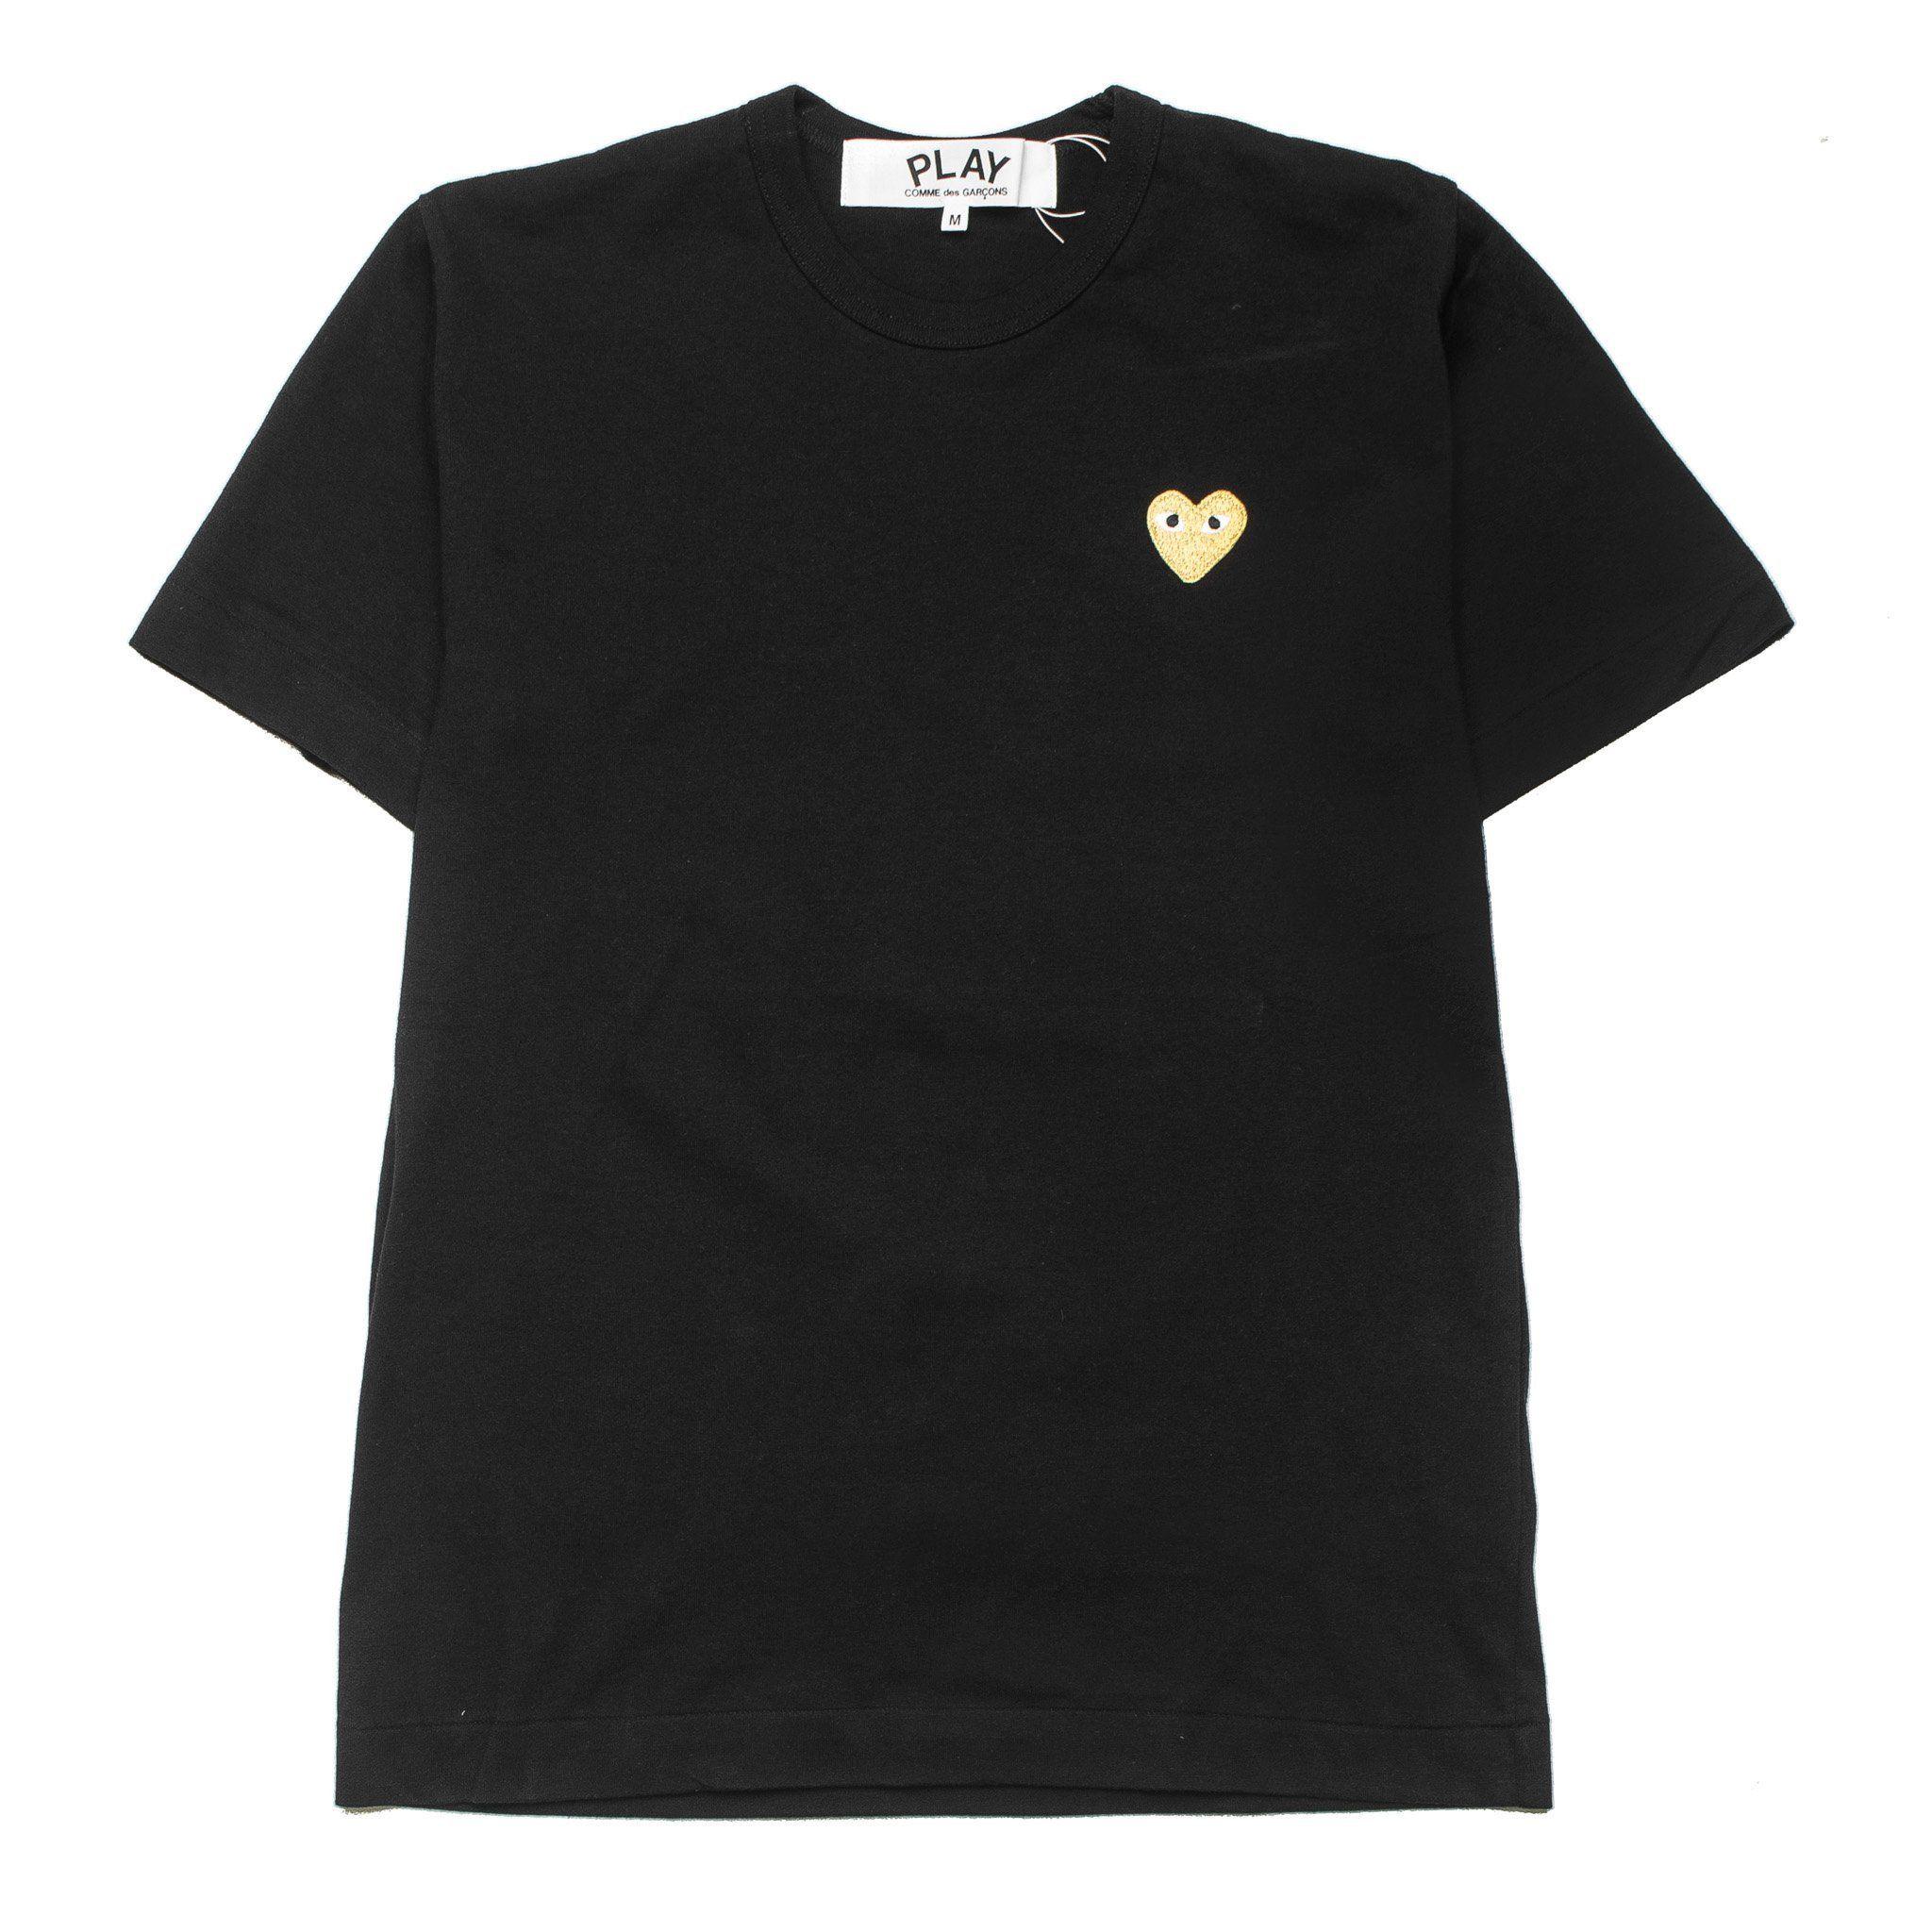 Gold Heart Logo - HEART LOGO GOLD AZ-T216-051-1 Tee Black – Capsule Online